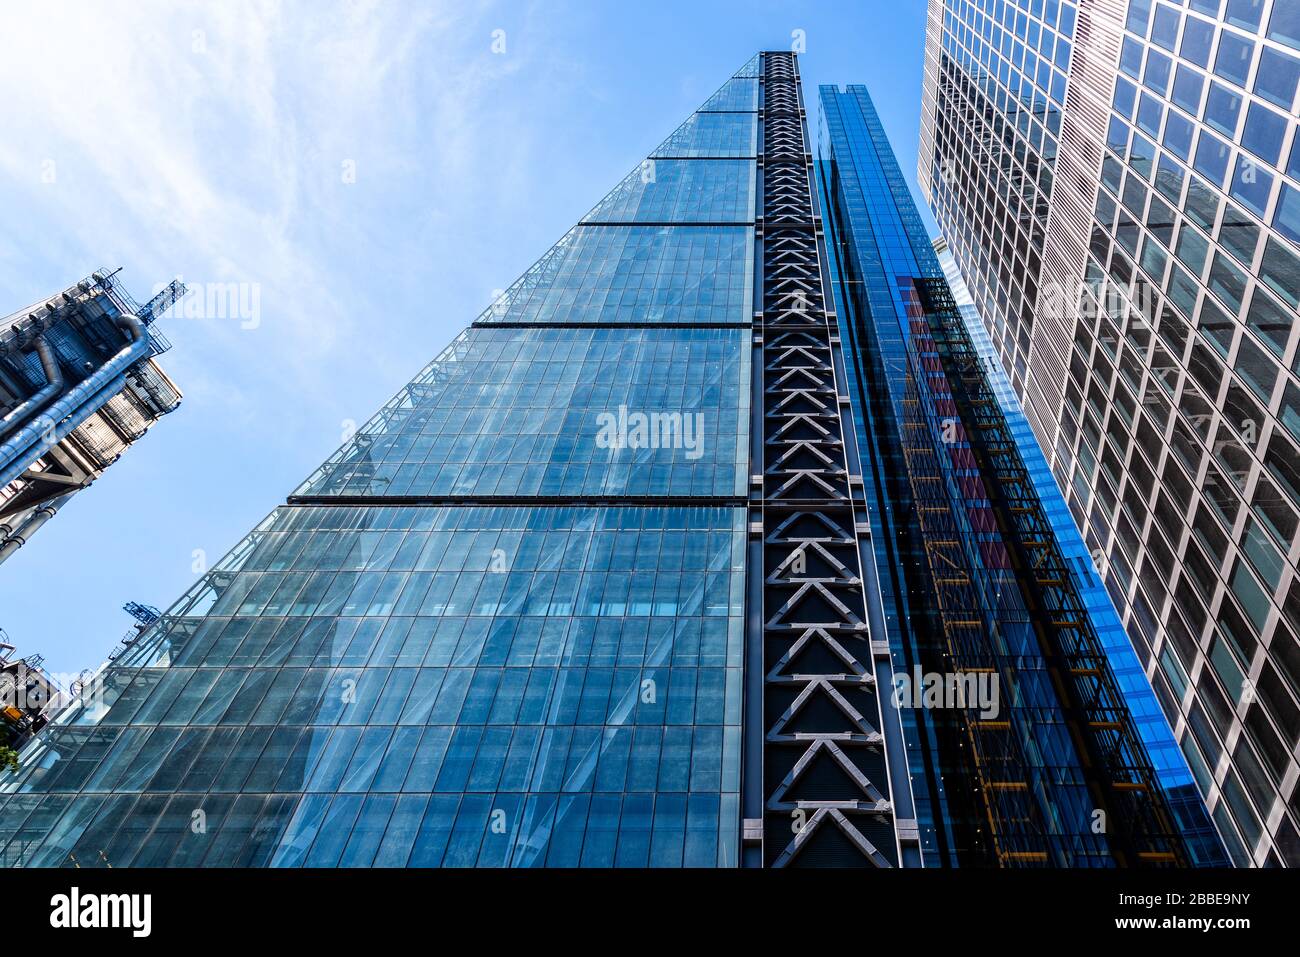 Londra, Regno Unito - 14 maggio 2019: Vista dall'angolo basso del Leadenhall Building nella City of London contro il cielo blu. Foto Stock